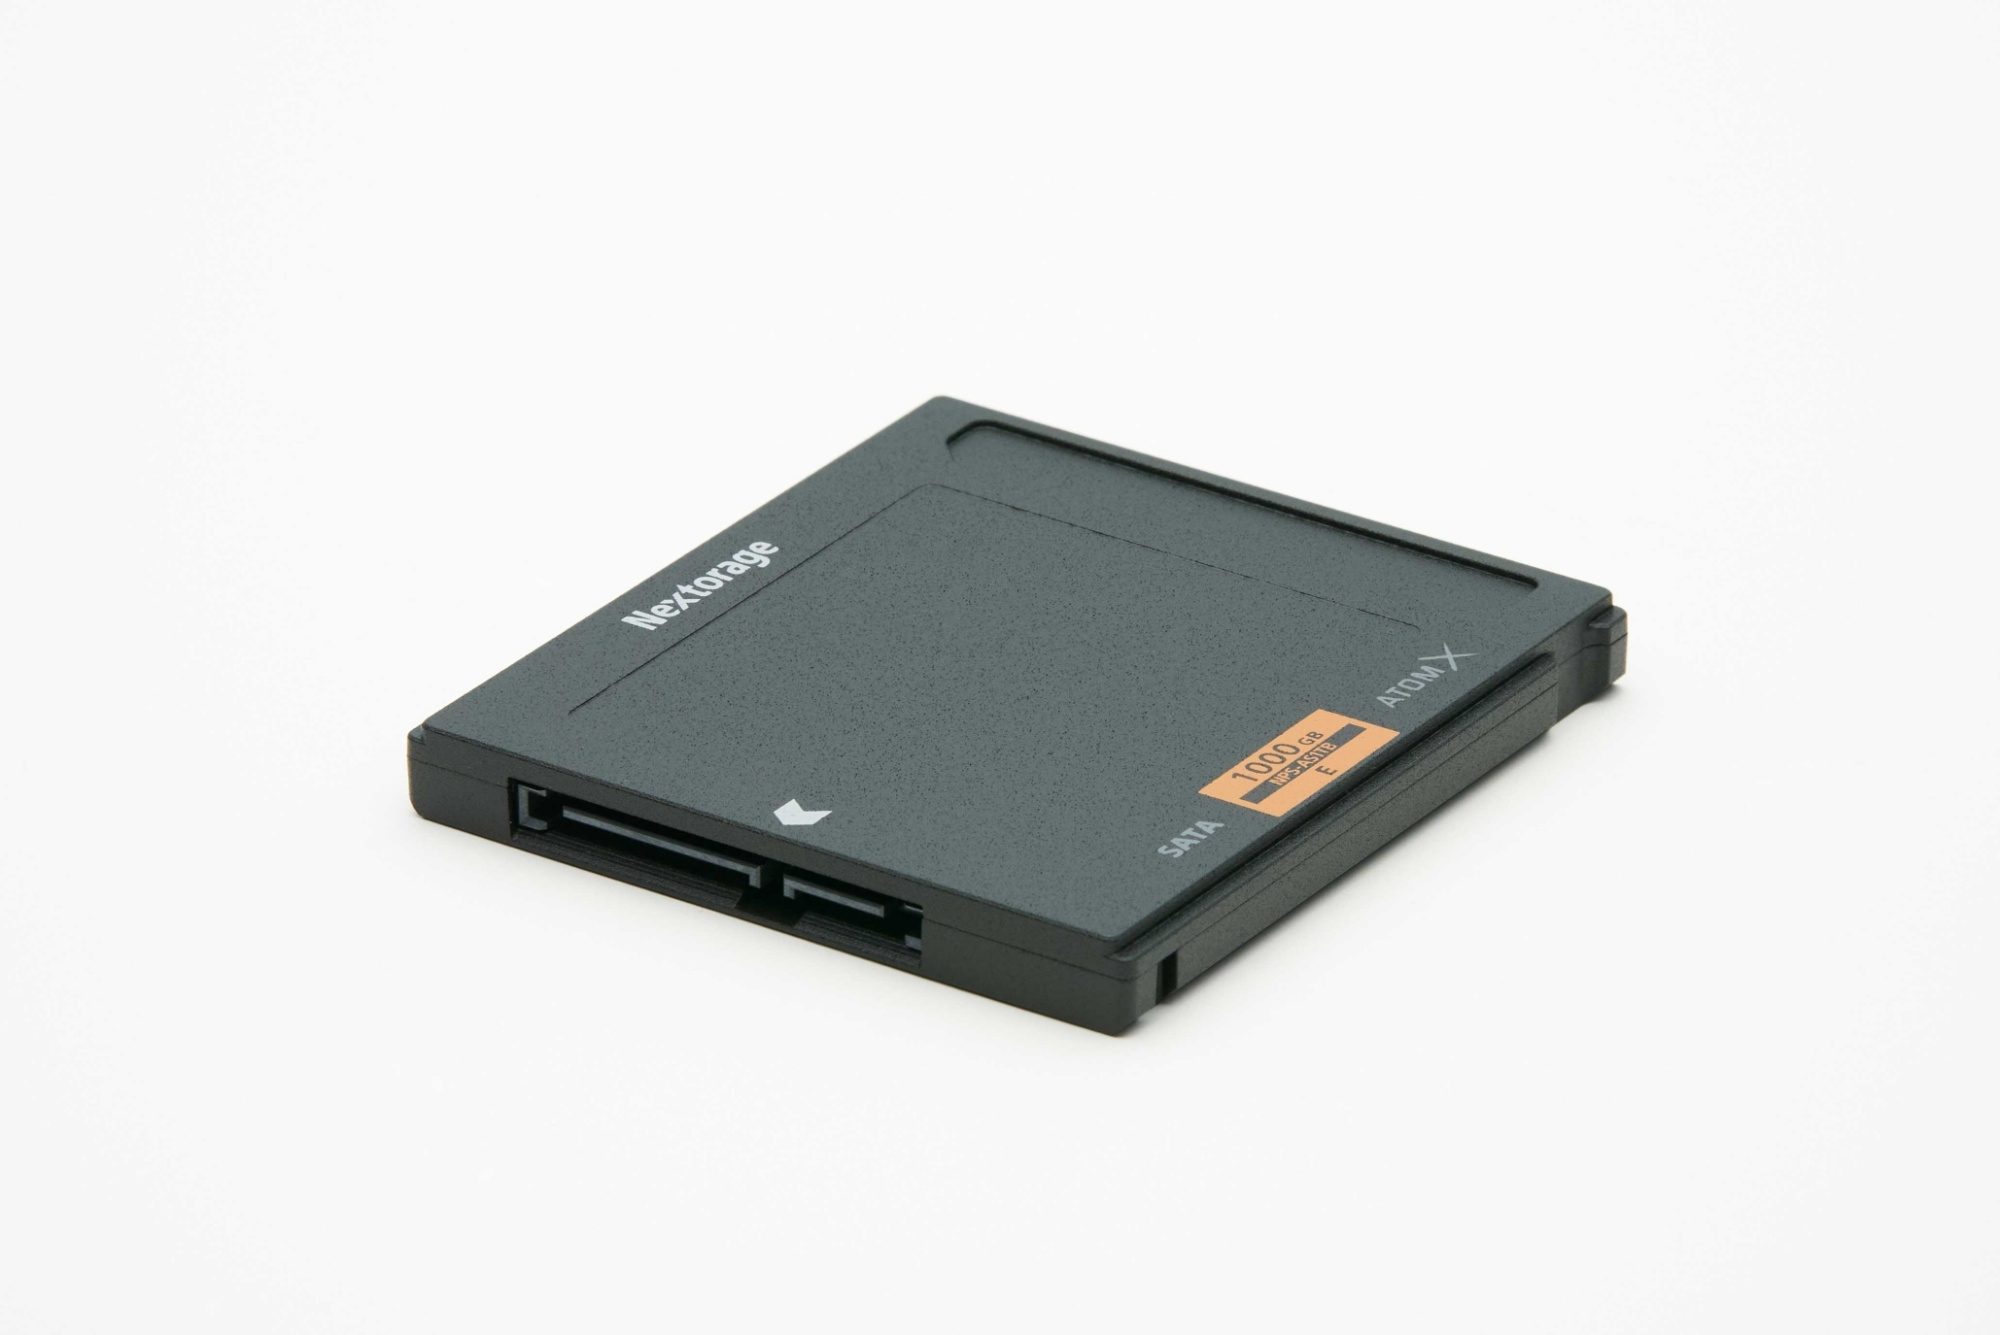 Nextorage Atom-X SSDmini 500GB